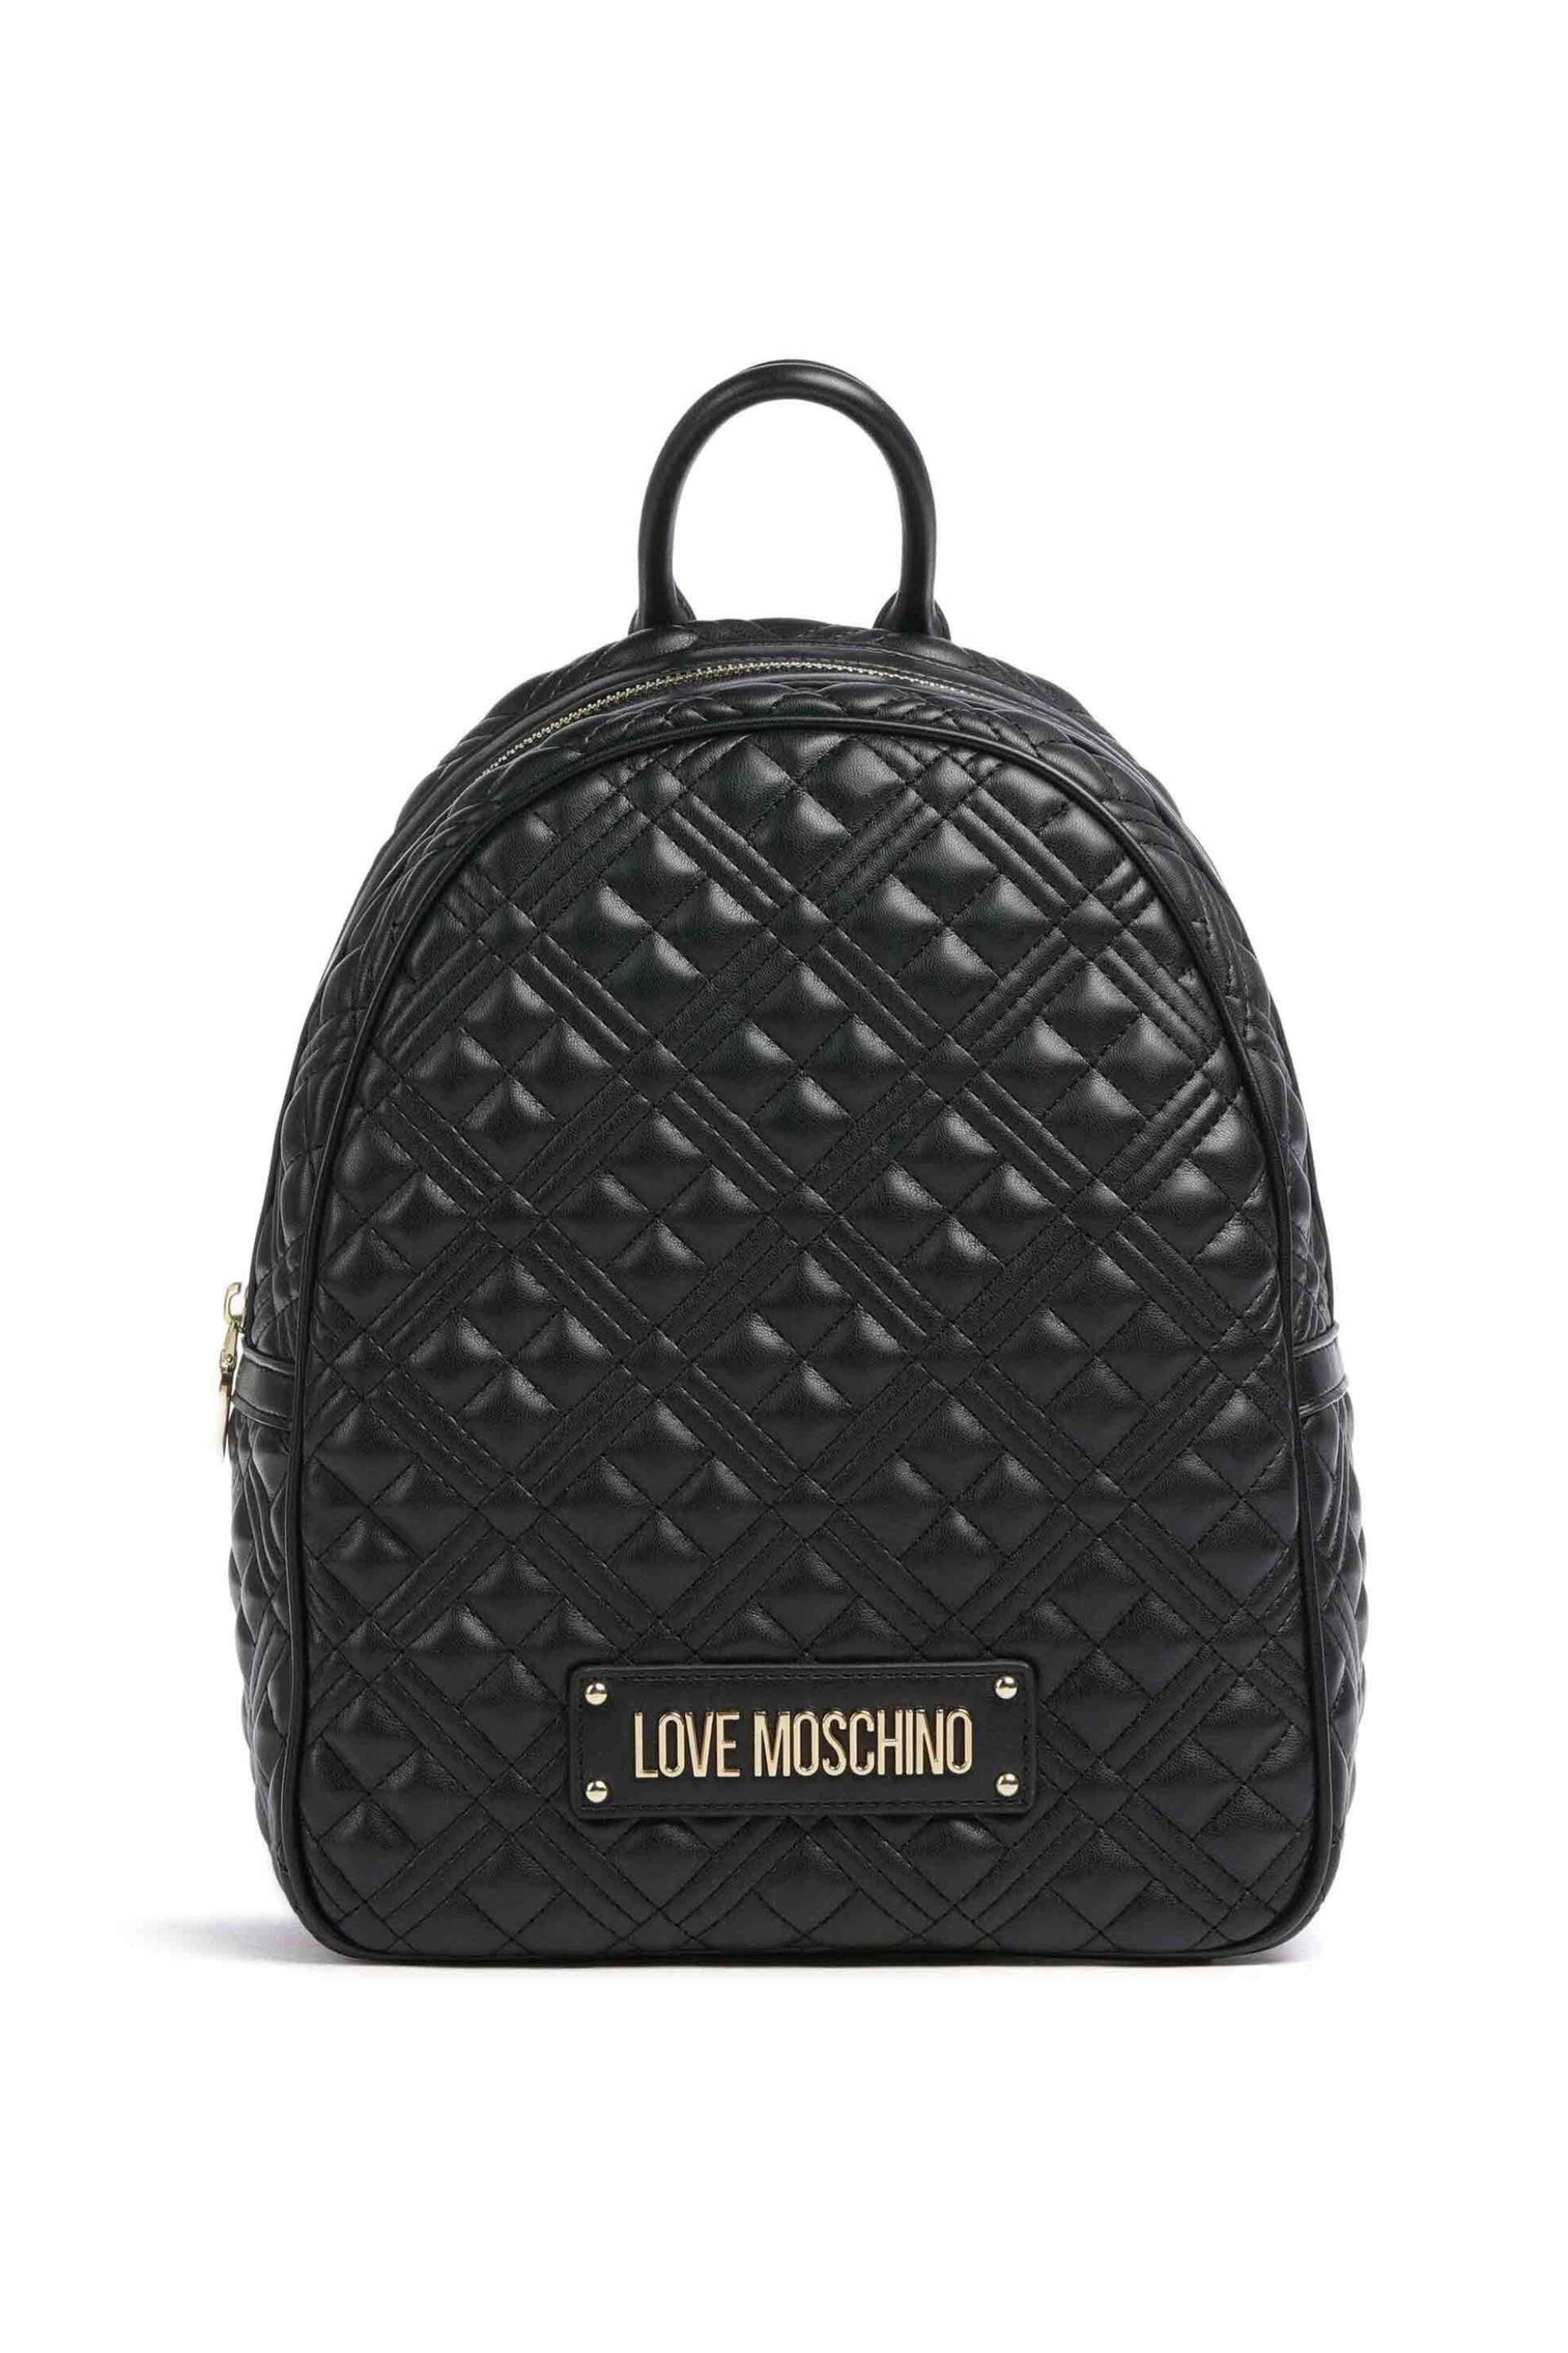 Love Moschino γυναικείο backpack μονόχρωμο με all-over ανάγλυφο pattern - JC4235PP0ILA0 Μαύρο